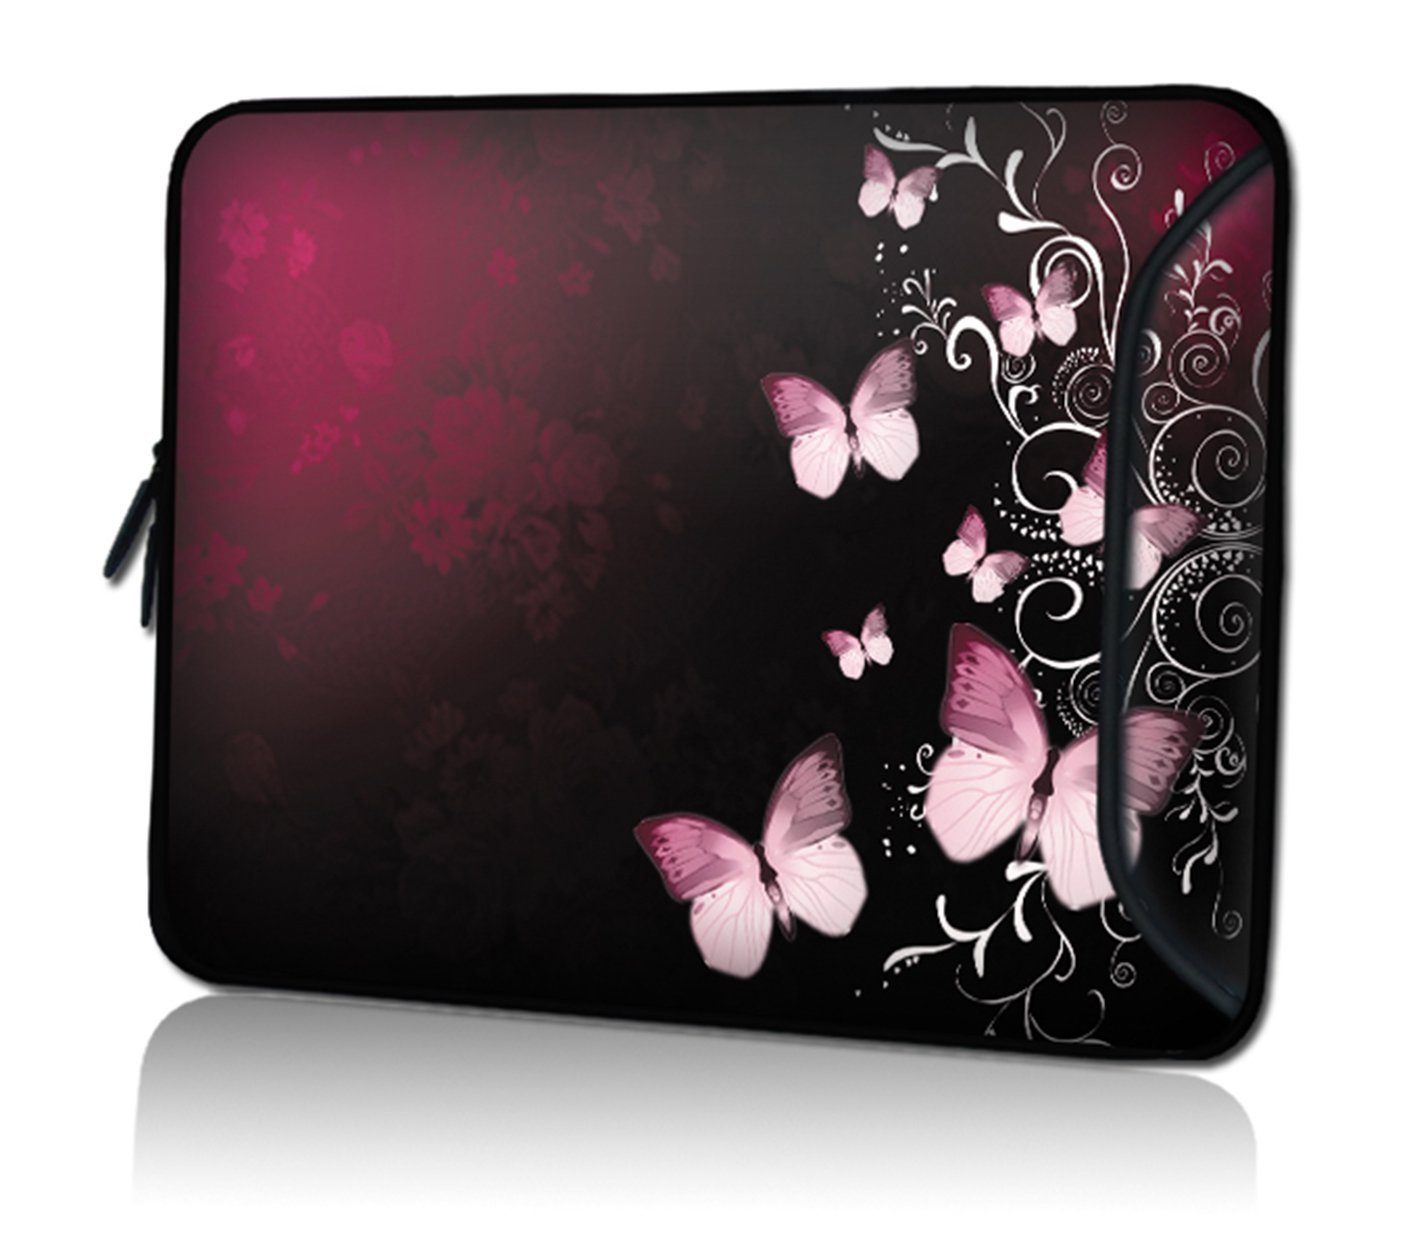 wortek Laptoptasche für Laptops bis 15,4", Butterfly Schwarz Rot, Wasserabweisend, mit Zusatzfach